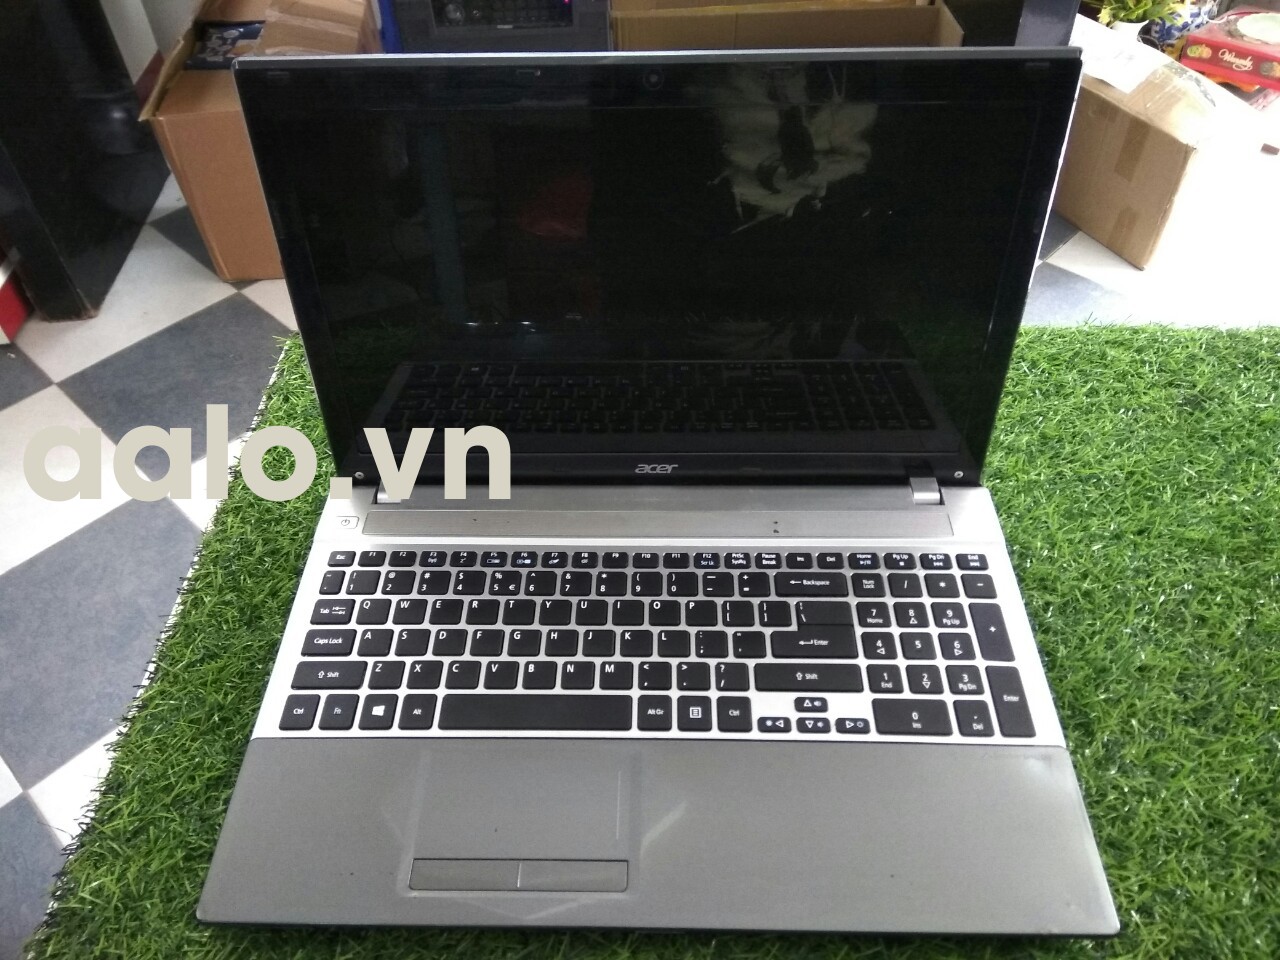 Laptop Acer v3-571 cũ (Core i5 - 3210M, 4GB, 250GB, Intel HD Graphics 4000, 15.6 inch) - bảo hành 1 năm